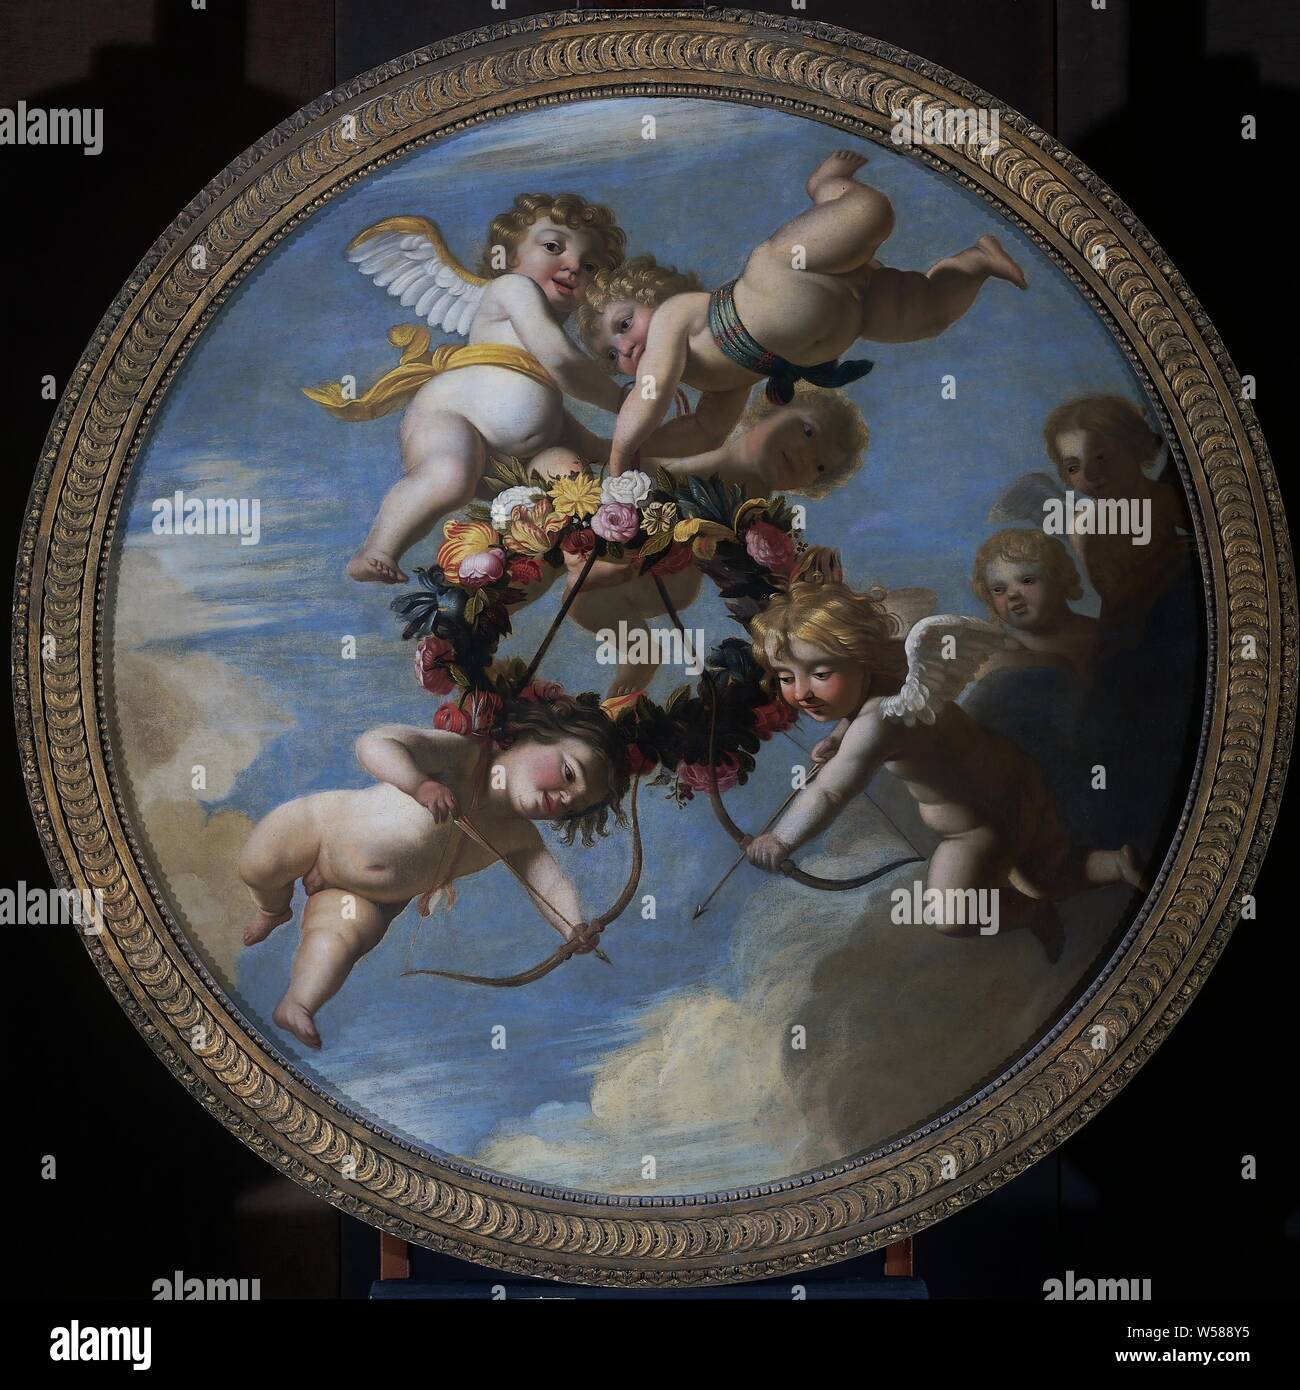 Putti avec Flower Garland, plafond rond morceau avec putti avec une couronne de fleurs, deux putti ont un arc et une flèche, Cupids : 'amores', 'amoretti', 'putti', Gerard van Honthorst (atelier de), nord des Pays-Bas), ch. 1650, la toile, la peinture à l'huile (peinture), de l'aide : d 133,2 cm d 6,5 cm Banque D'Images